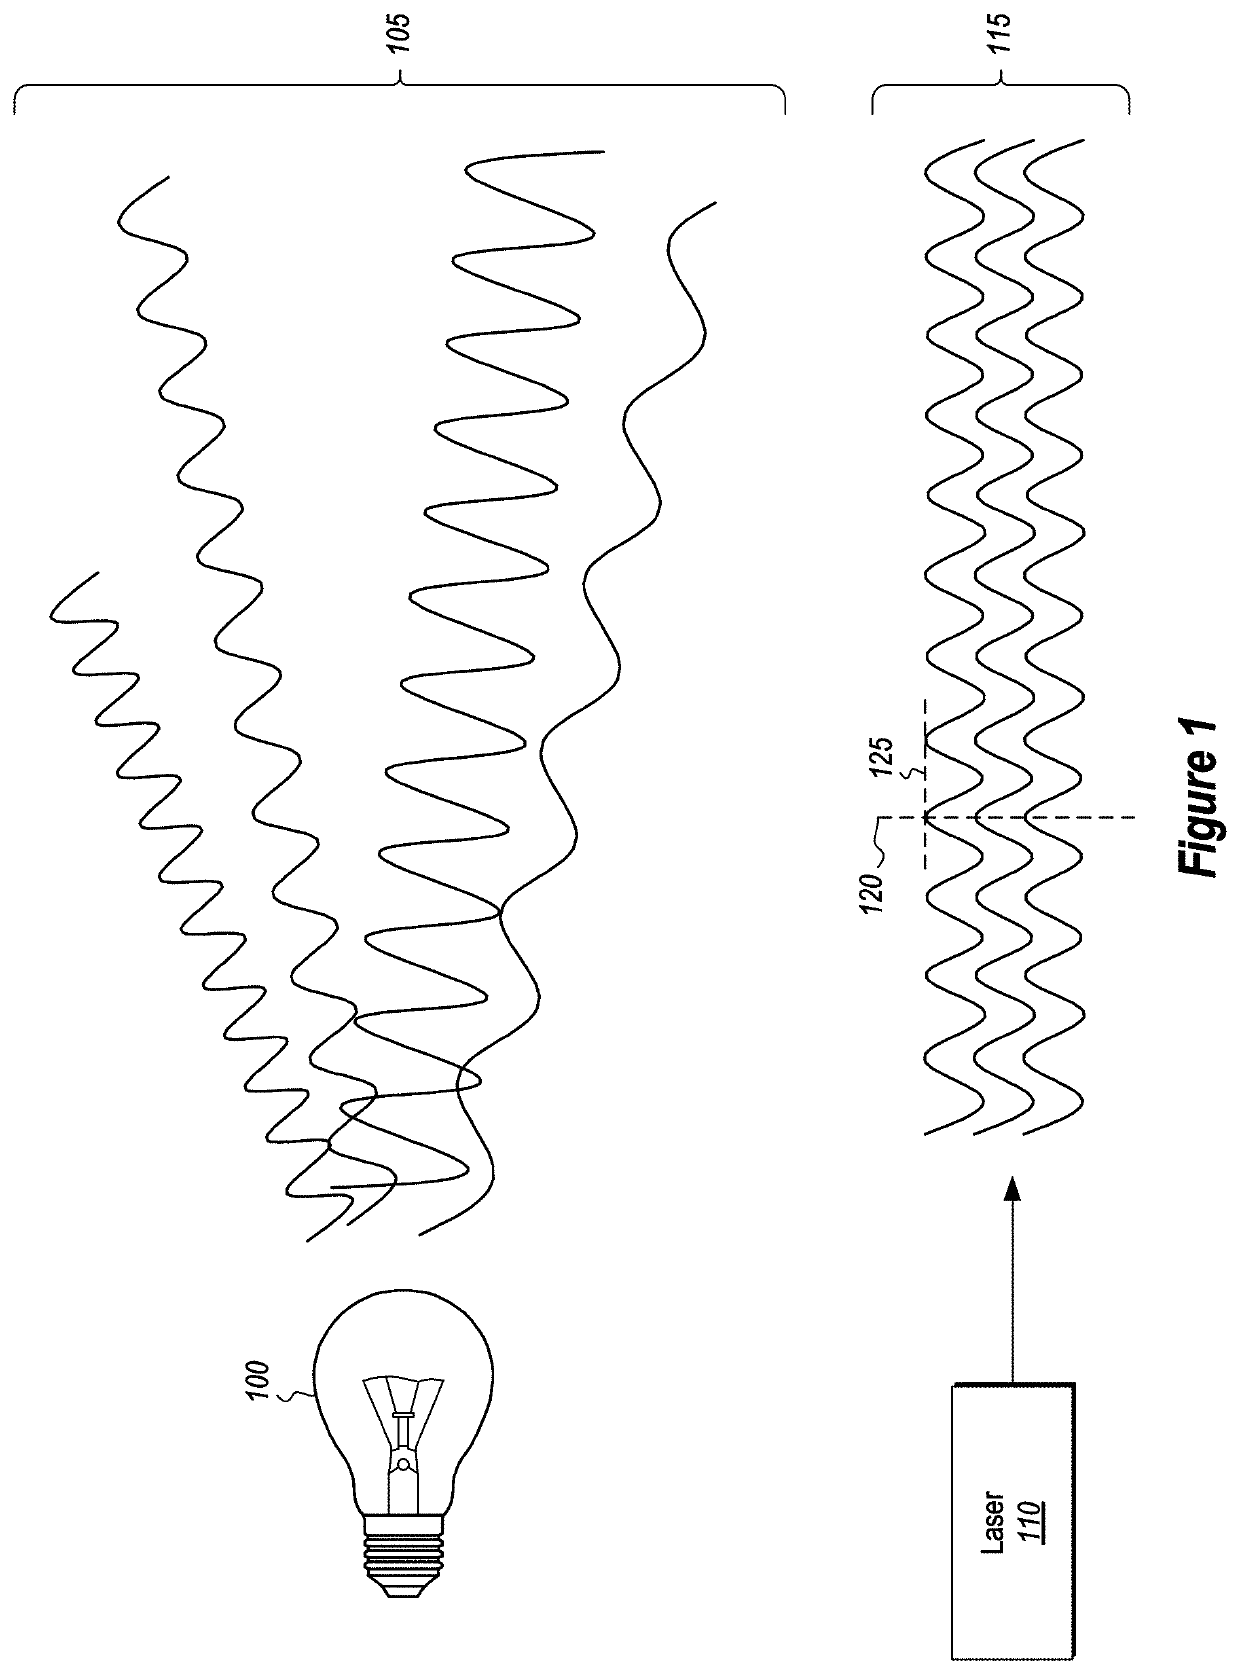 Fringe mitigation using short pulsed laser diodes